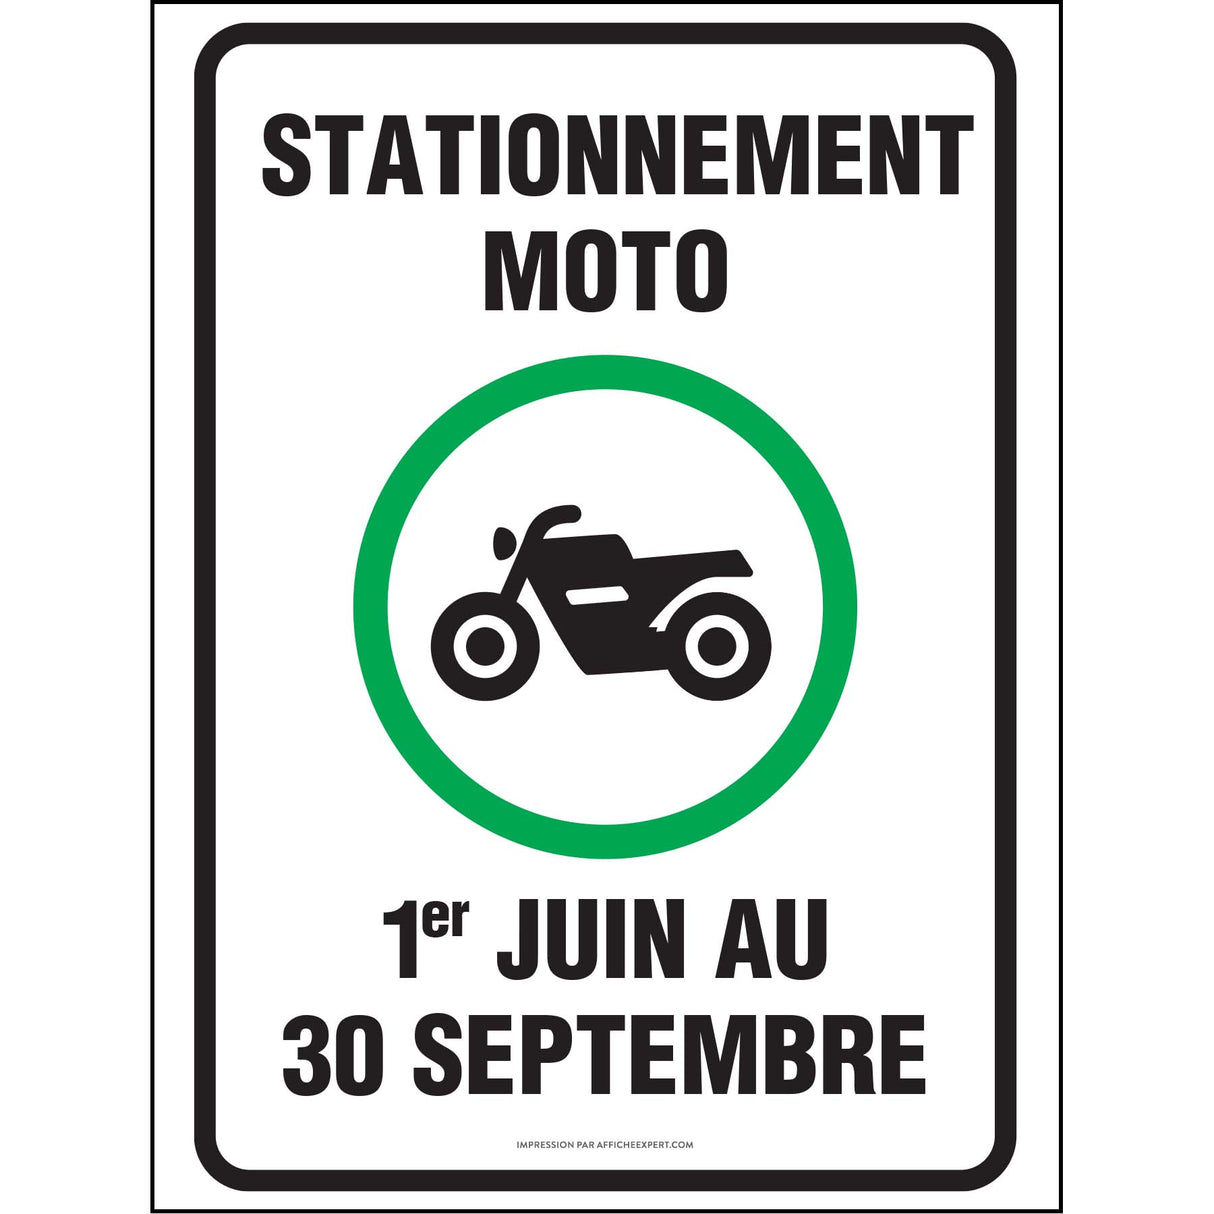 Stationnement réservé moto - 1er juin au 30 septembre